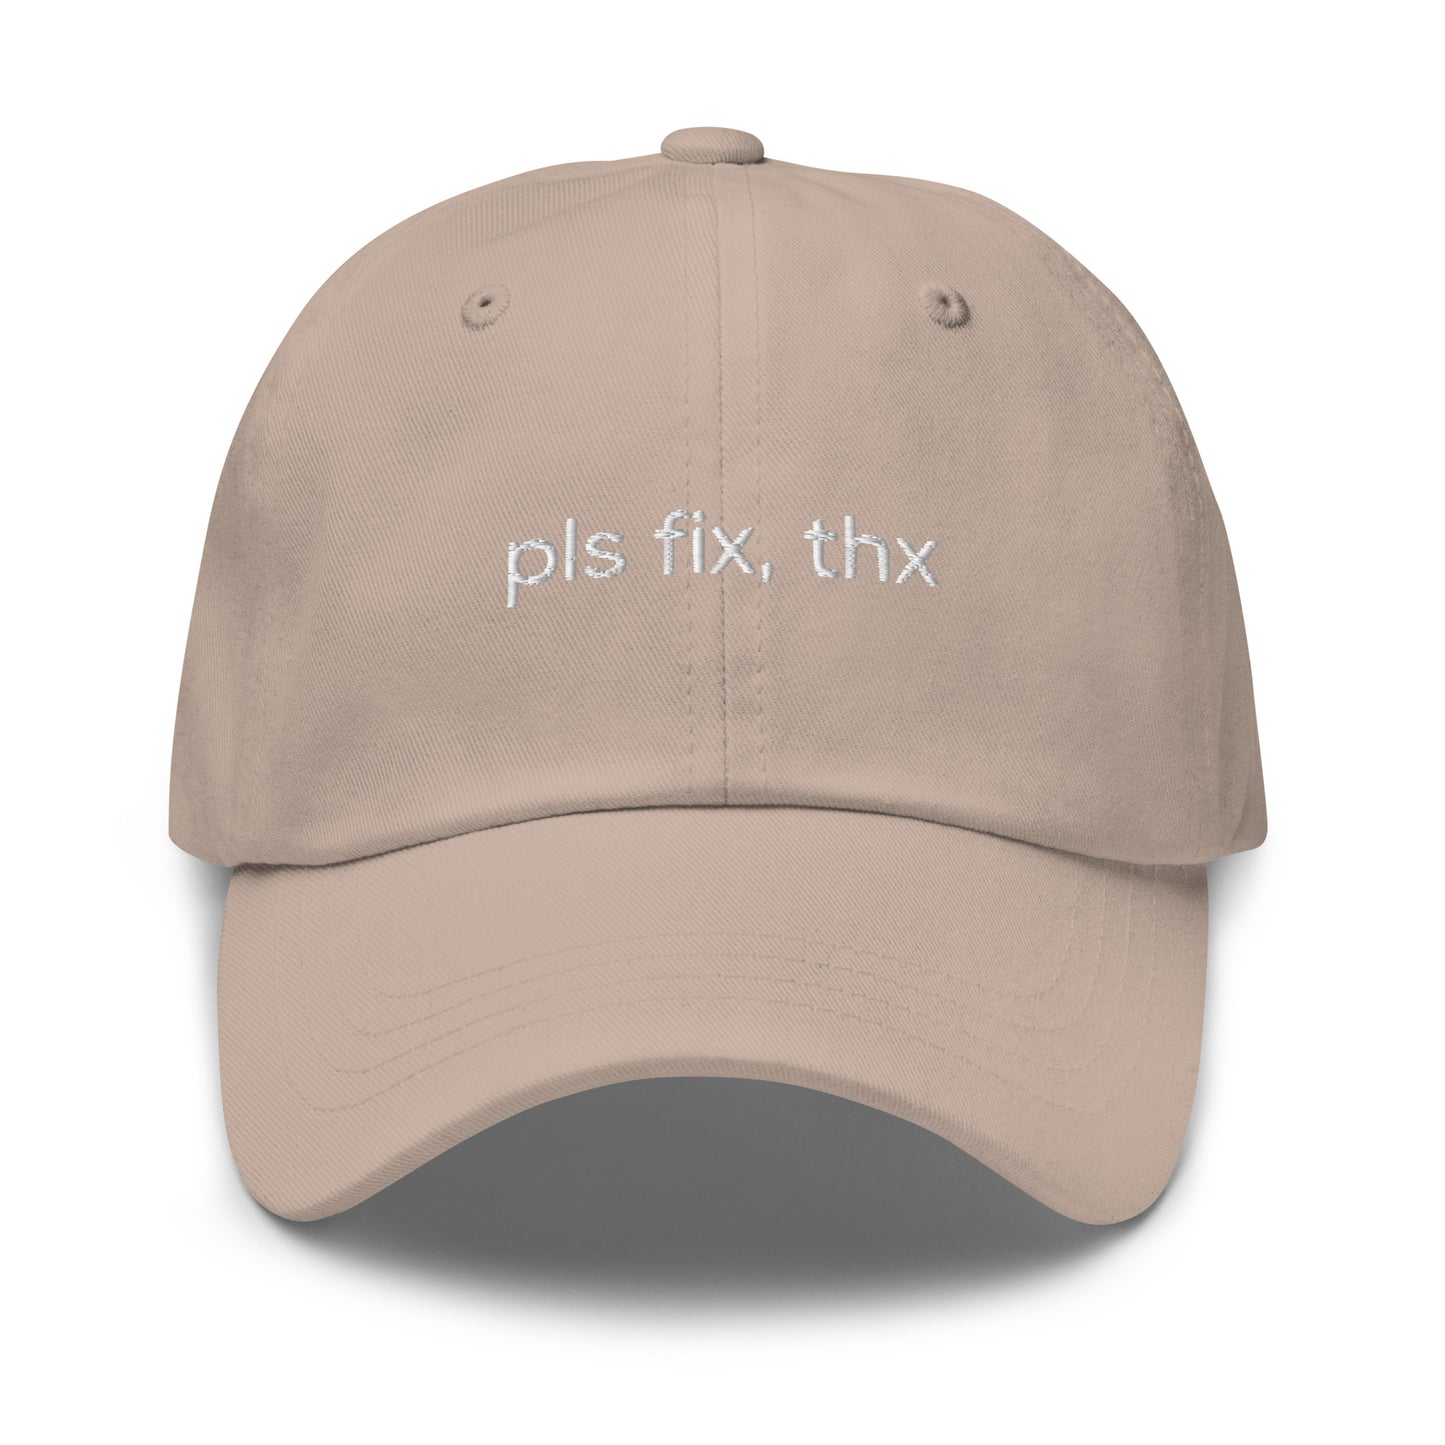 Pls fix, thx Cap